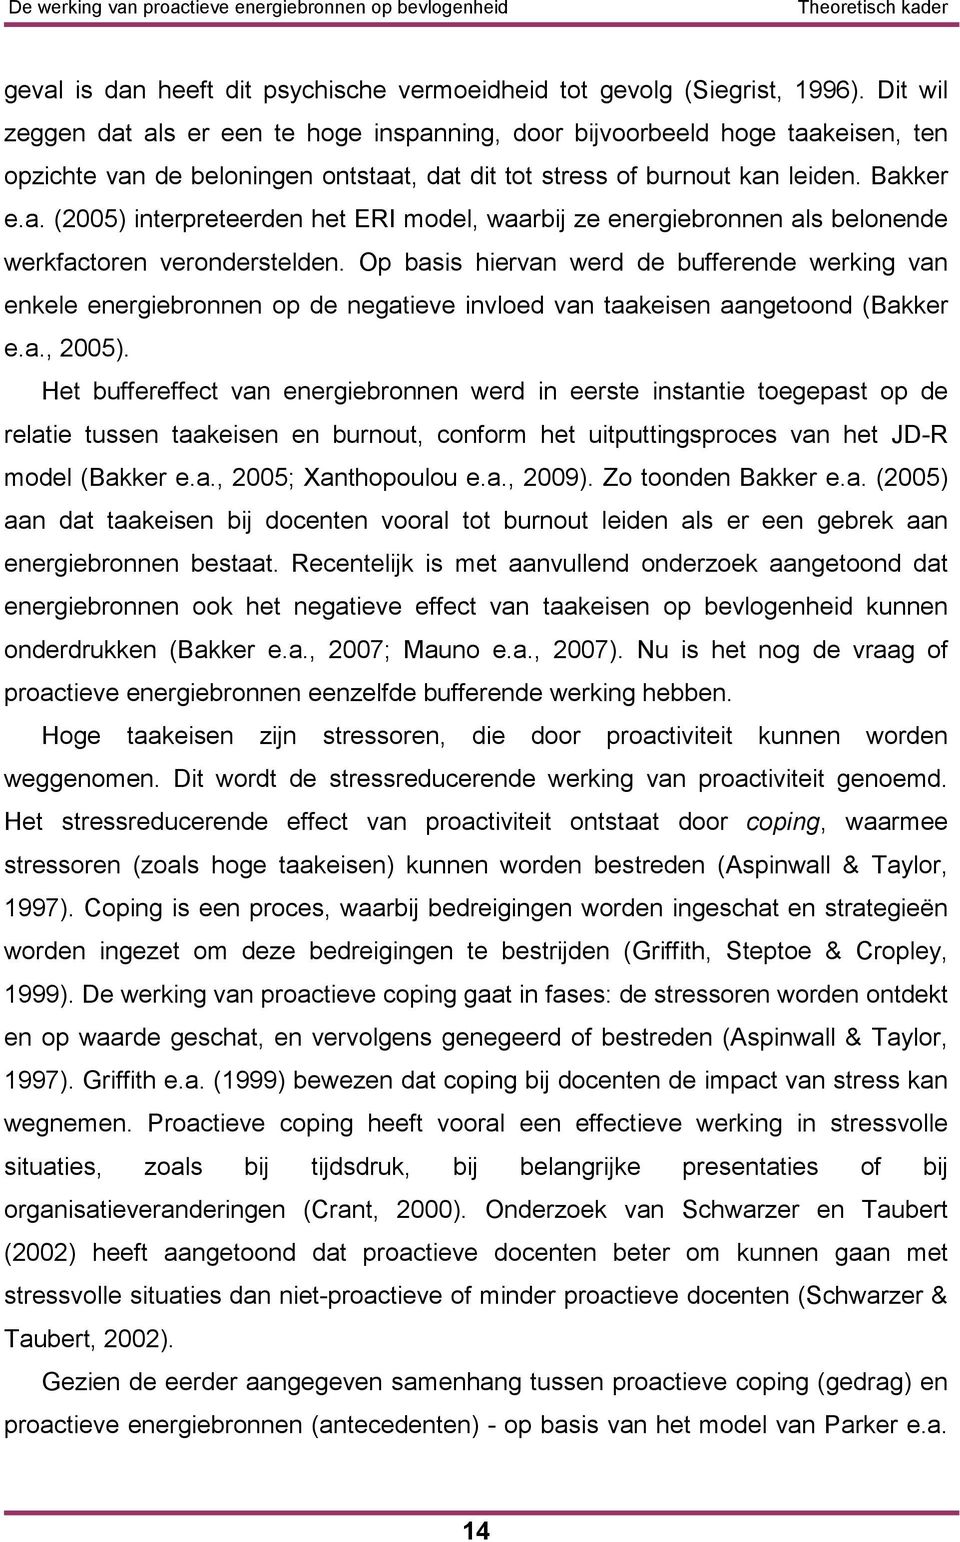 Op basis hiervan werd de bufferende werking van enkele energiebronnen op de negatieve invloed van taakeisen aangetoond (Bakker e.a., 2005).